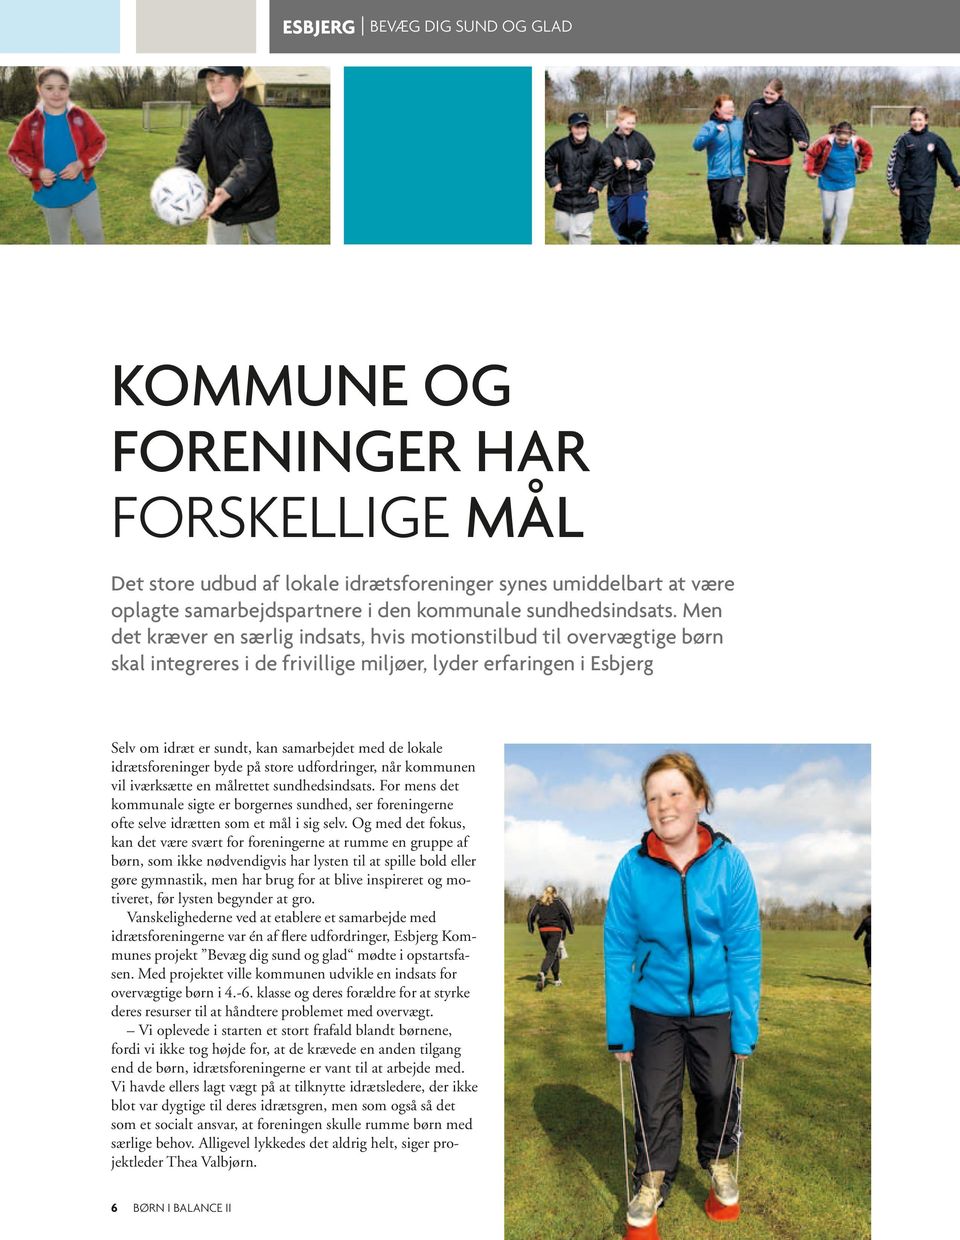 Men det kræver en særlig indsats, hvis motionstilbud til overvægtige børn skal integreres i de frivillige miljøer, lyder erfaringen i Esbjerg Selv om idræt er sundt, kan samarbejdet med de lokale